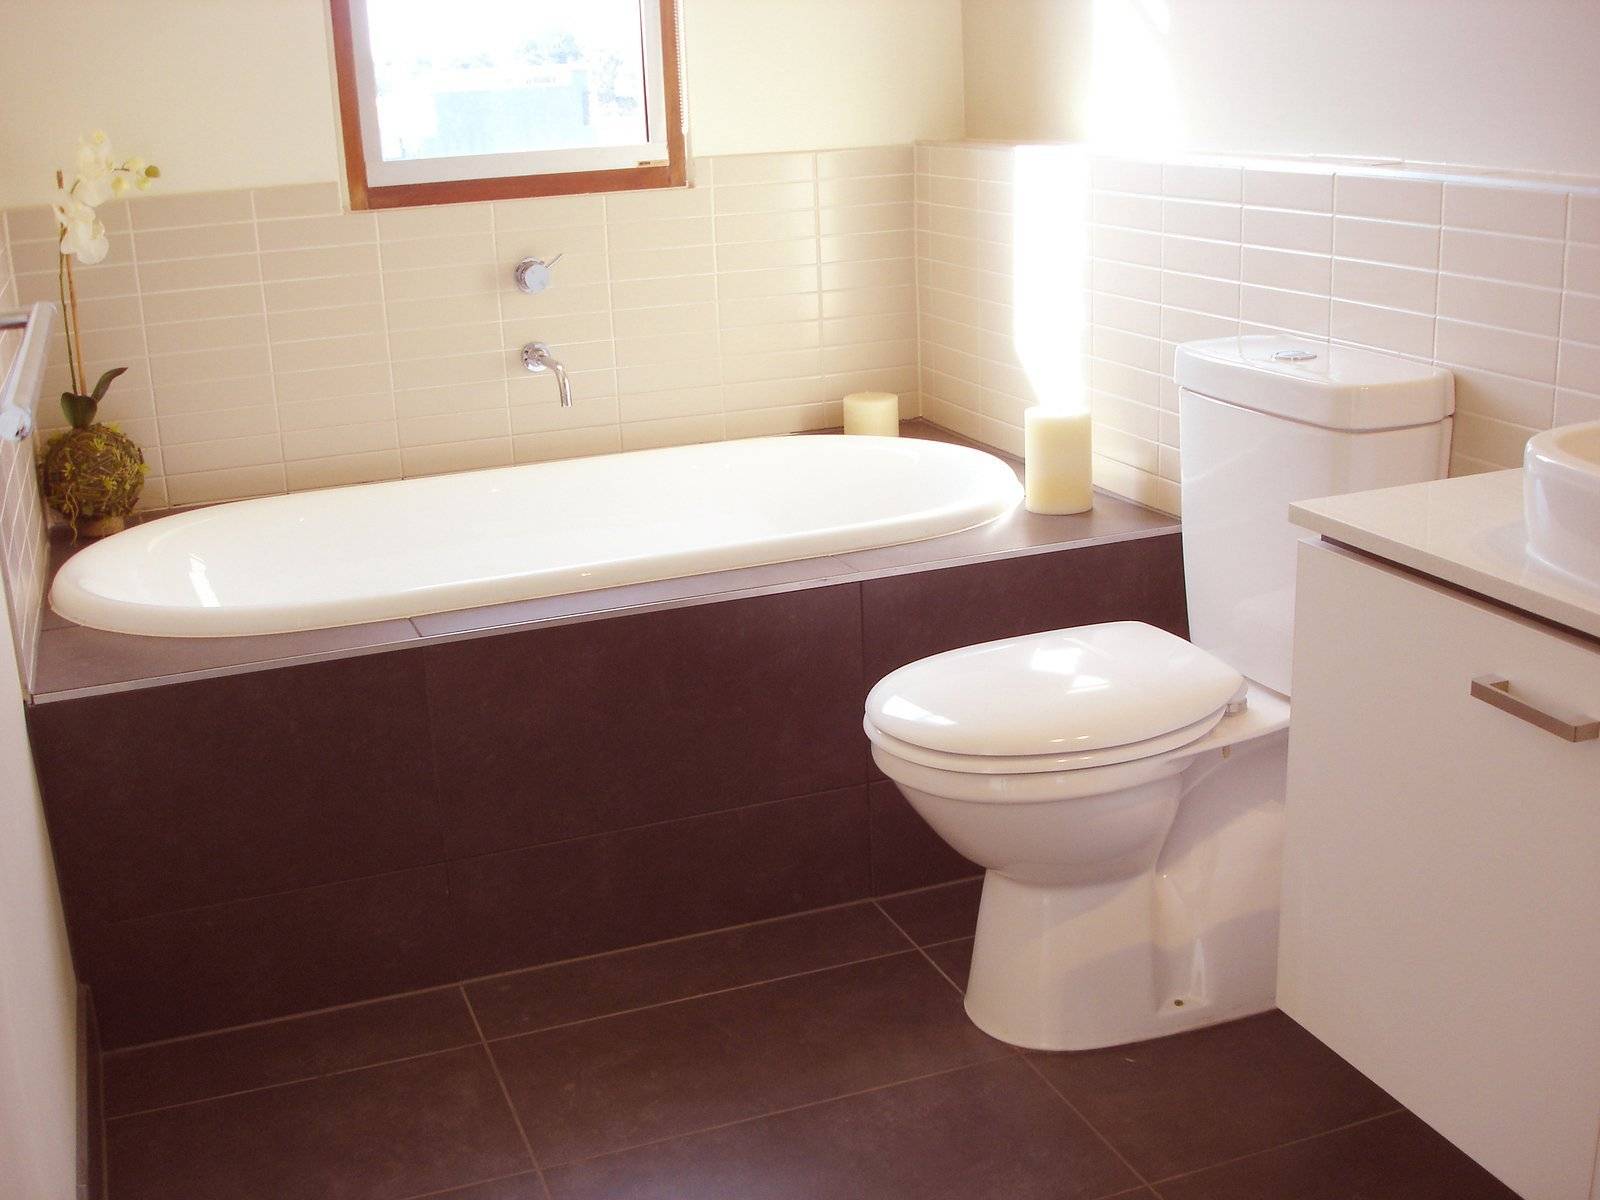 Видео материалы по ремонту ванной комнаты. видео-уроки по ответственным этапам работ